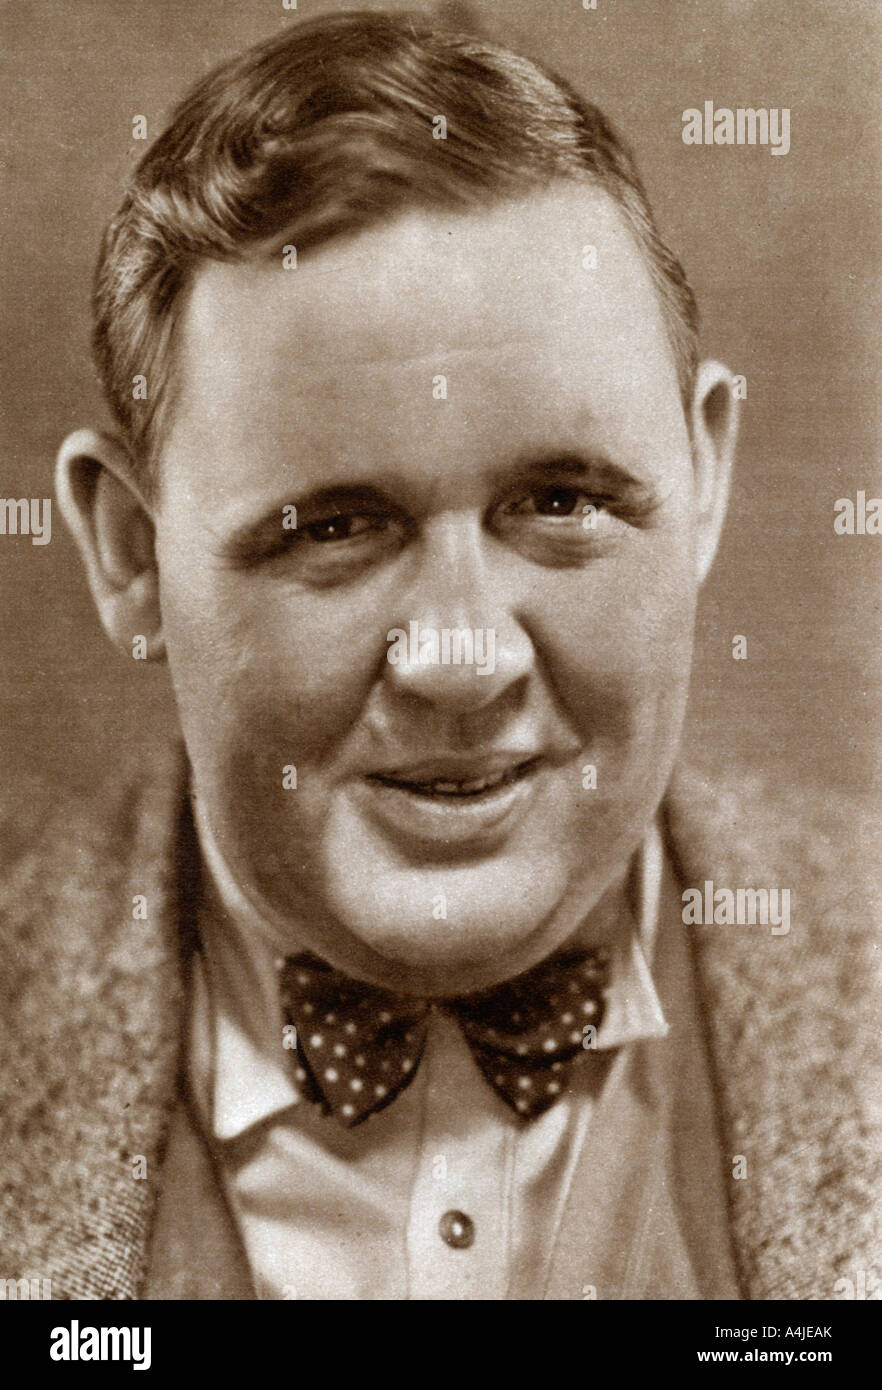 Charles Laughton, tappa inglese e attore di cinema, 1933. Artista: sconosciuto Foto Stock